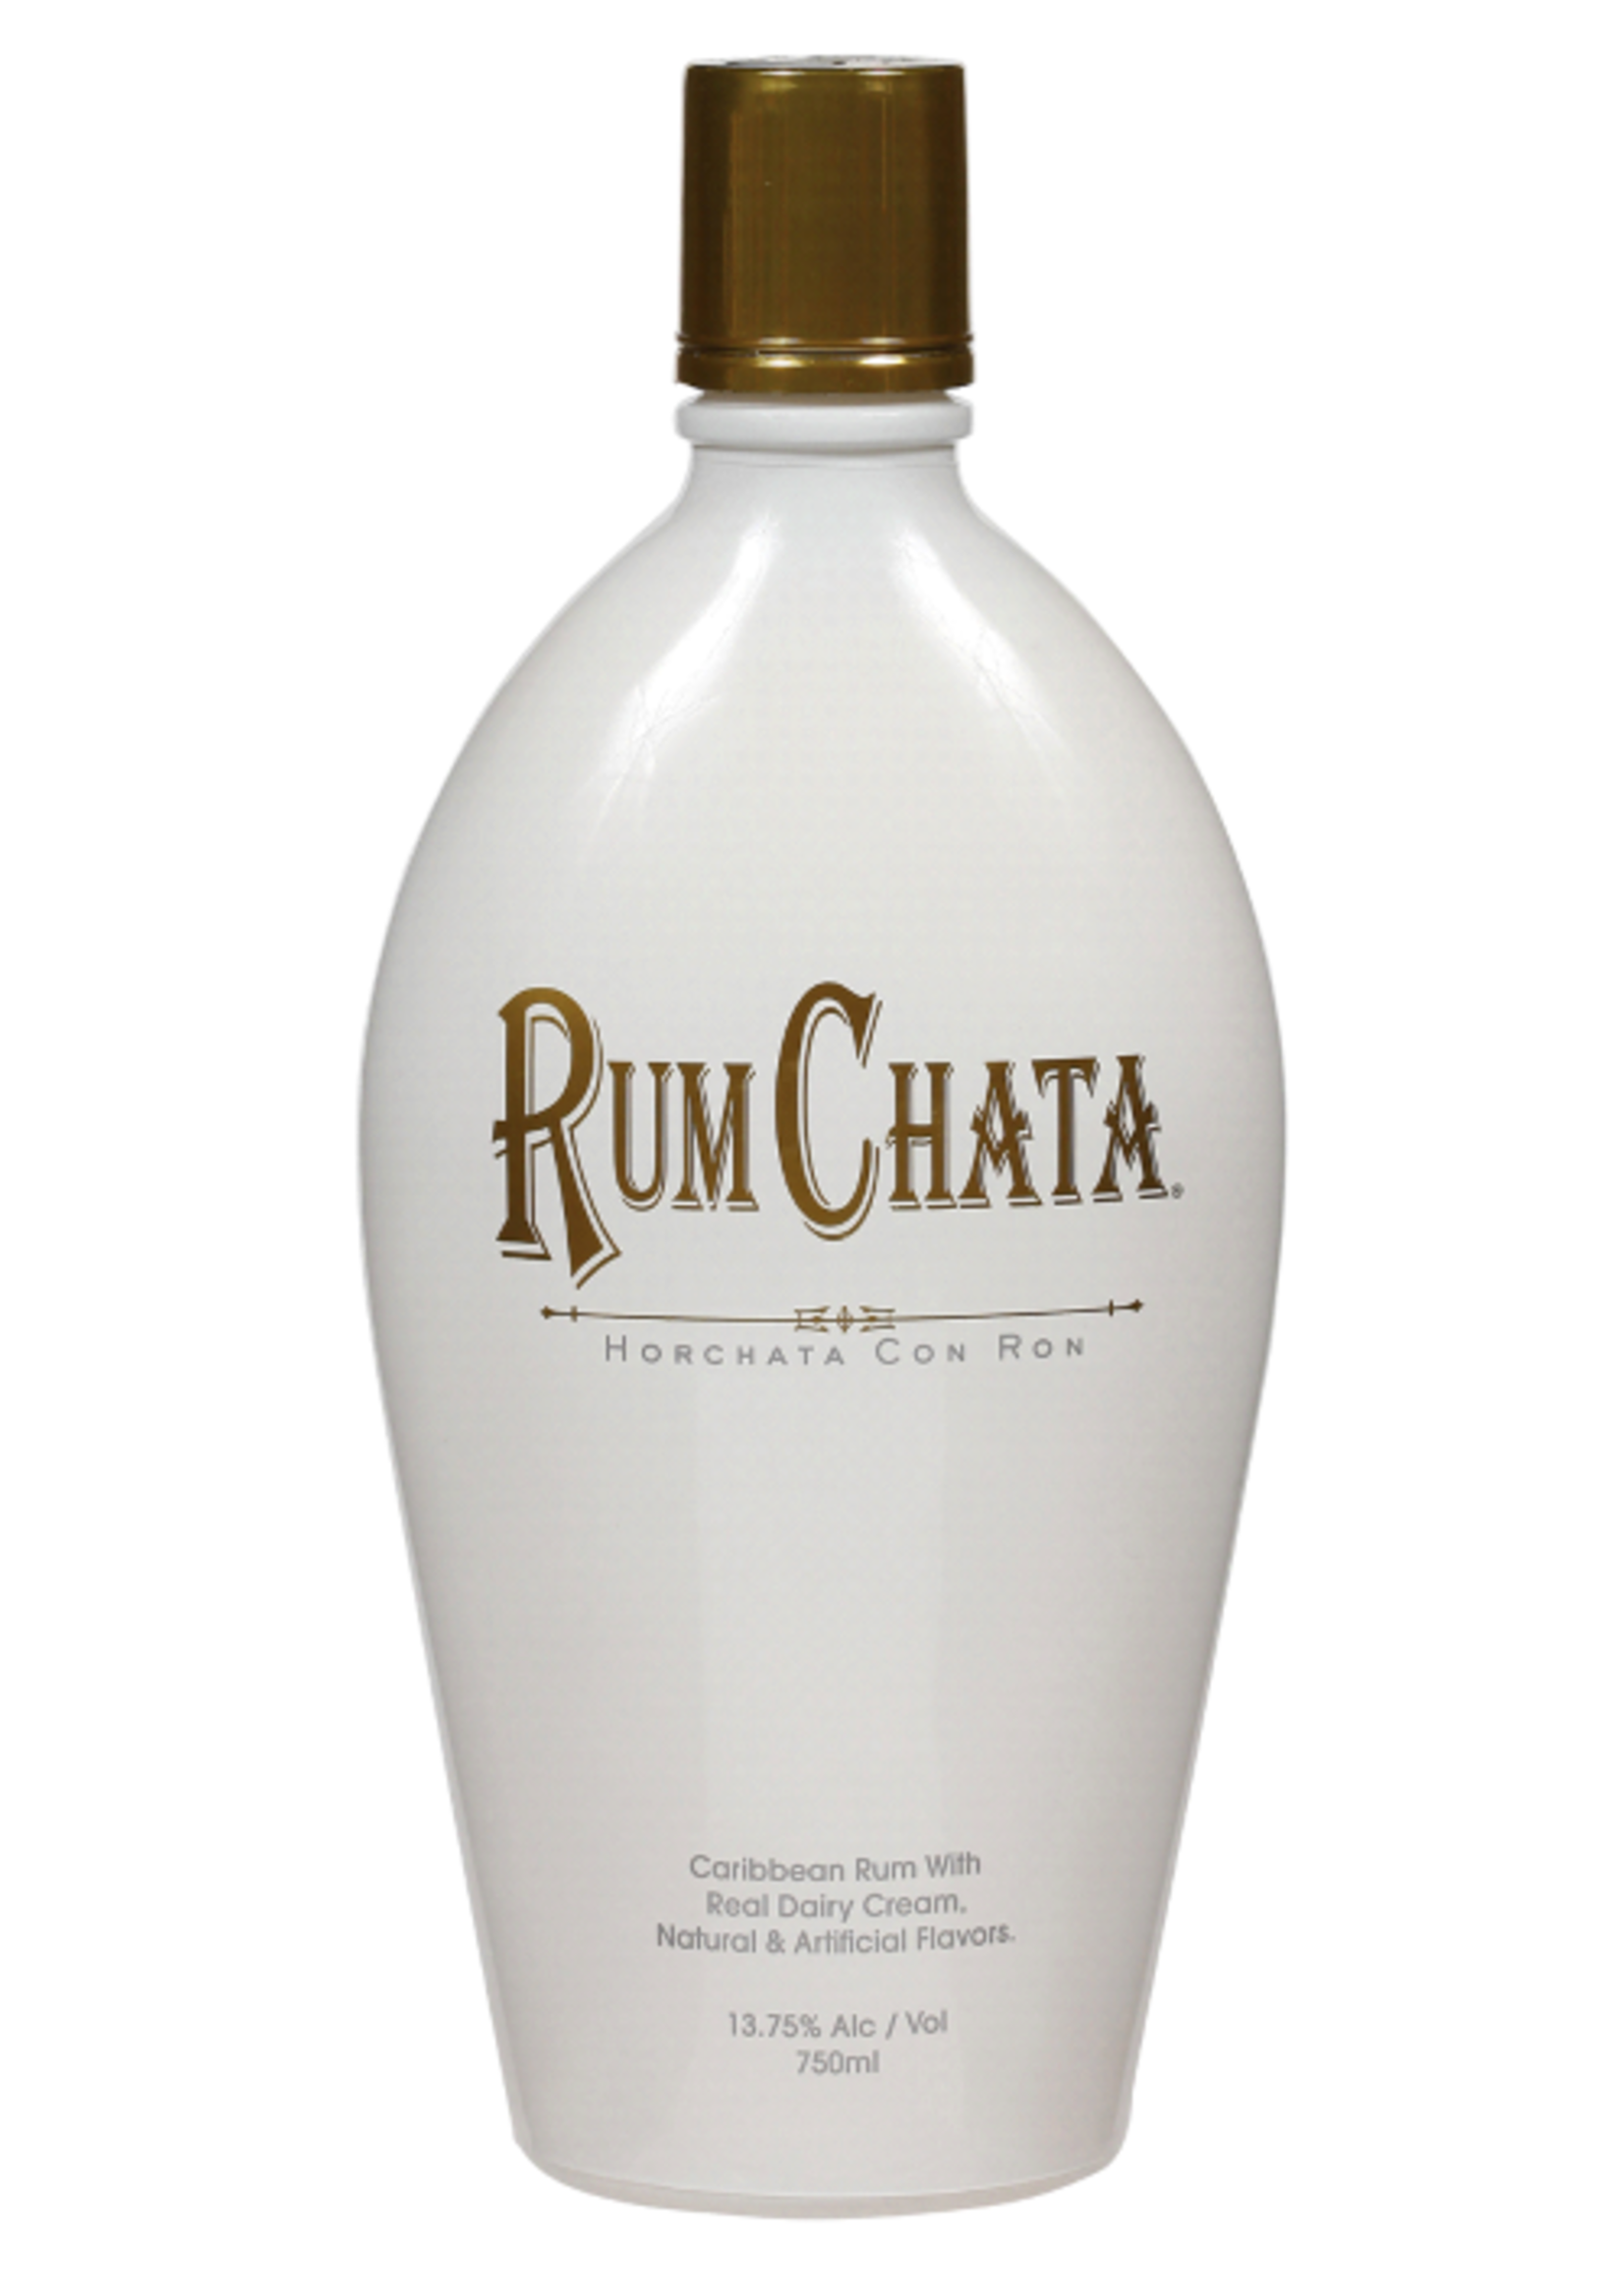 Rum Chata RumChata / Horchata Con Ron